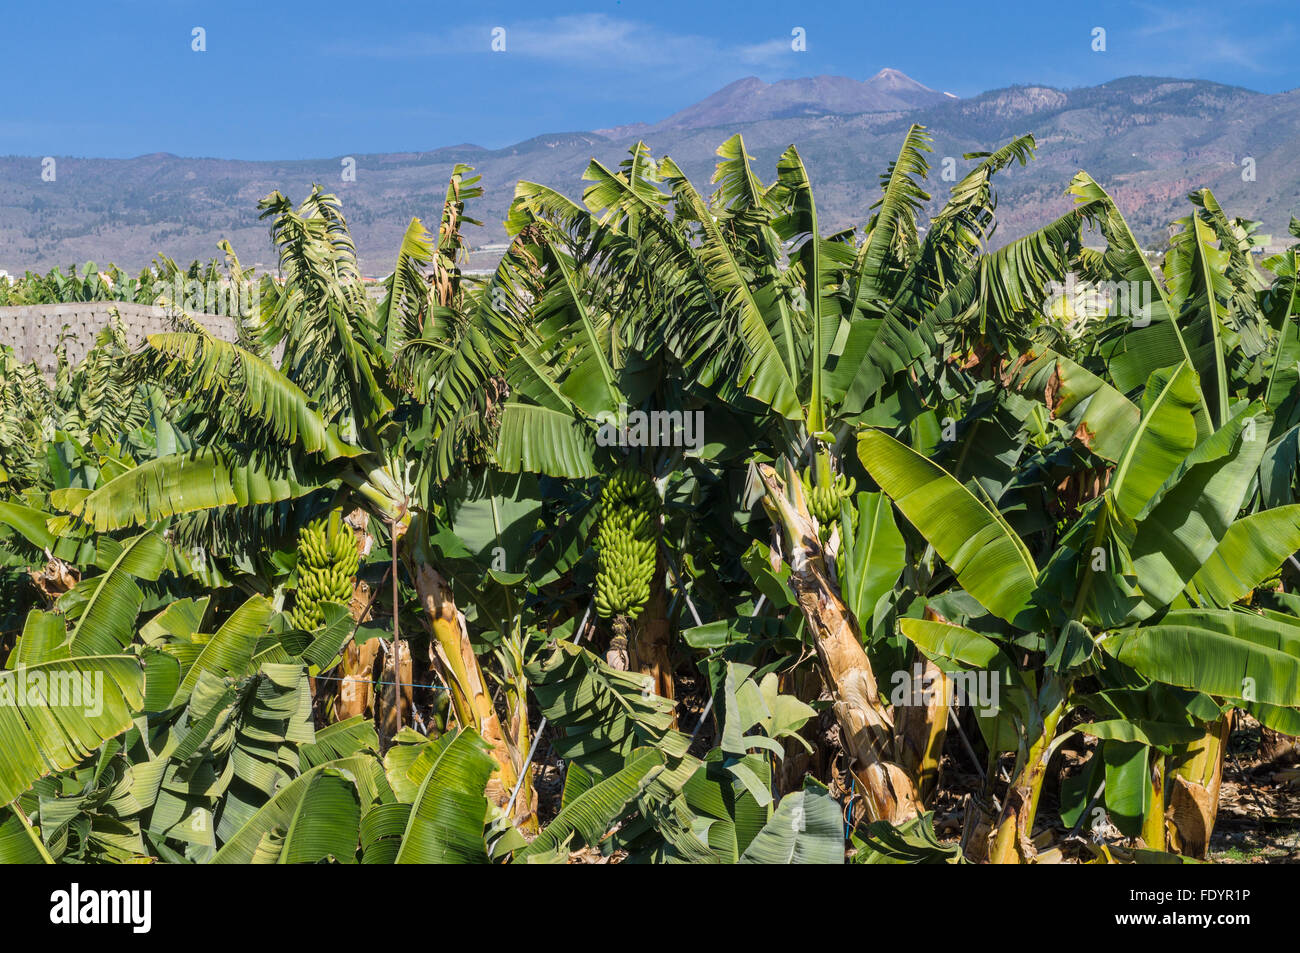 Bananenplantage mit Bergen im Hintergrund, Teneriffa, Kanarische Inseln, Spanien Stockfoto